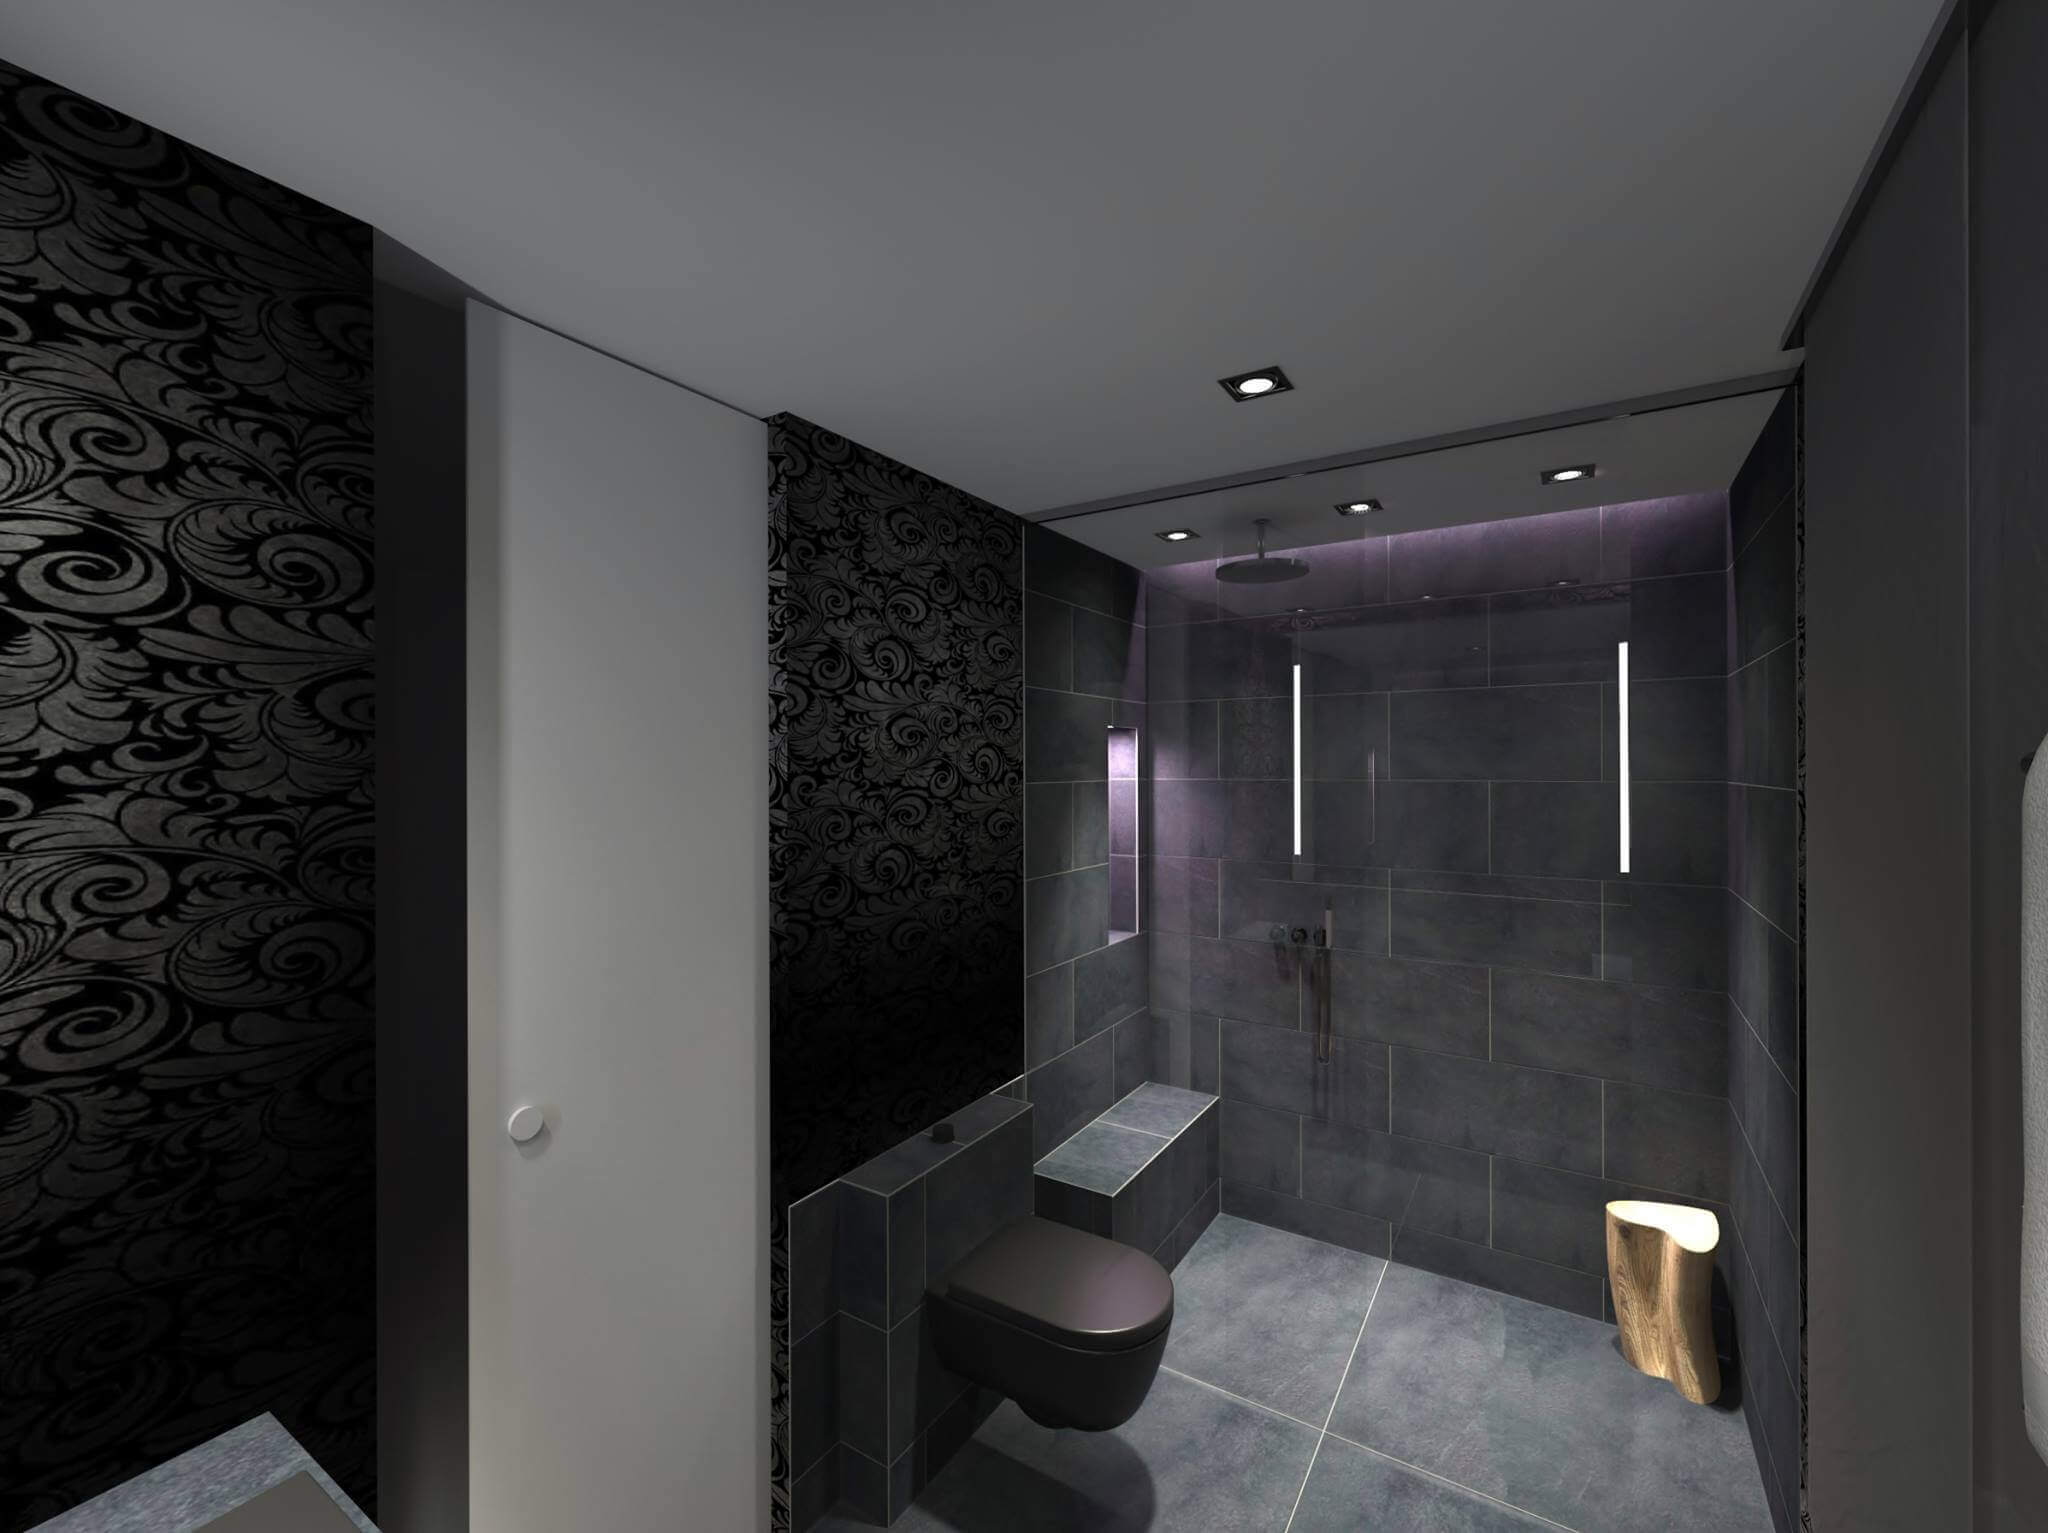 Badezimmer mit großer Dusche und Toilette in dunklem Grau und schwarzer Tapete